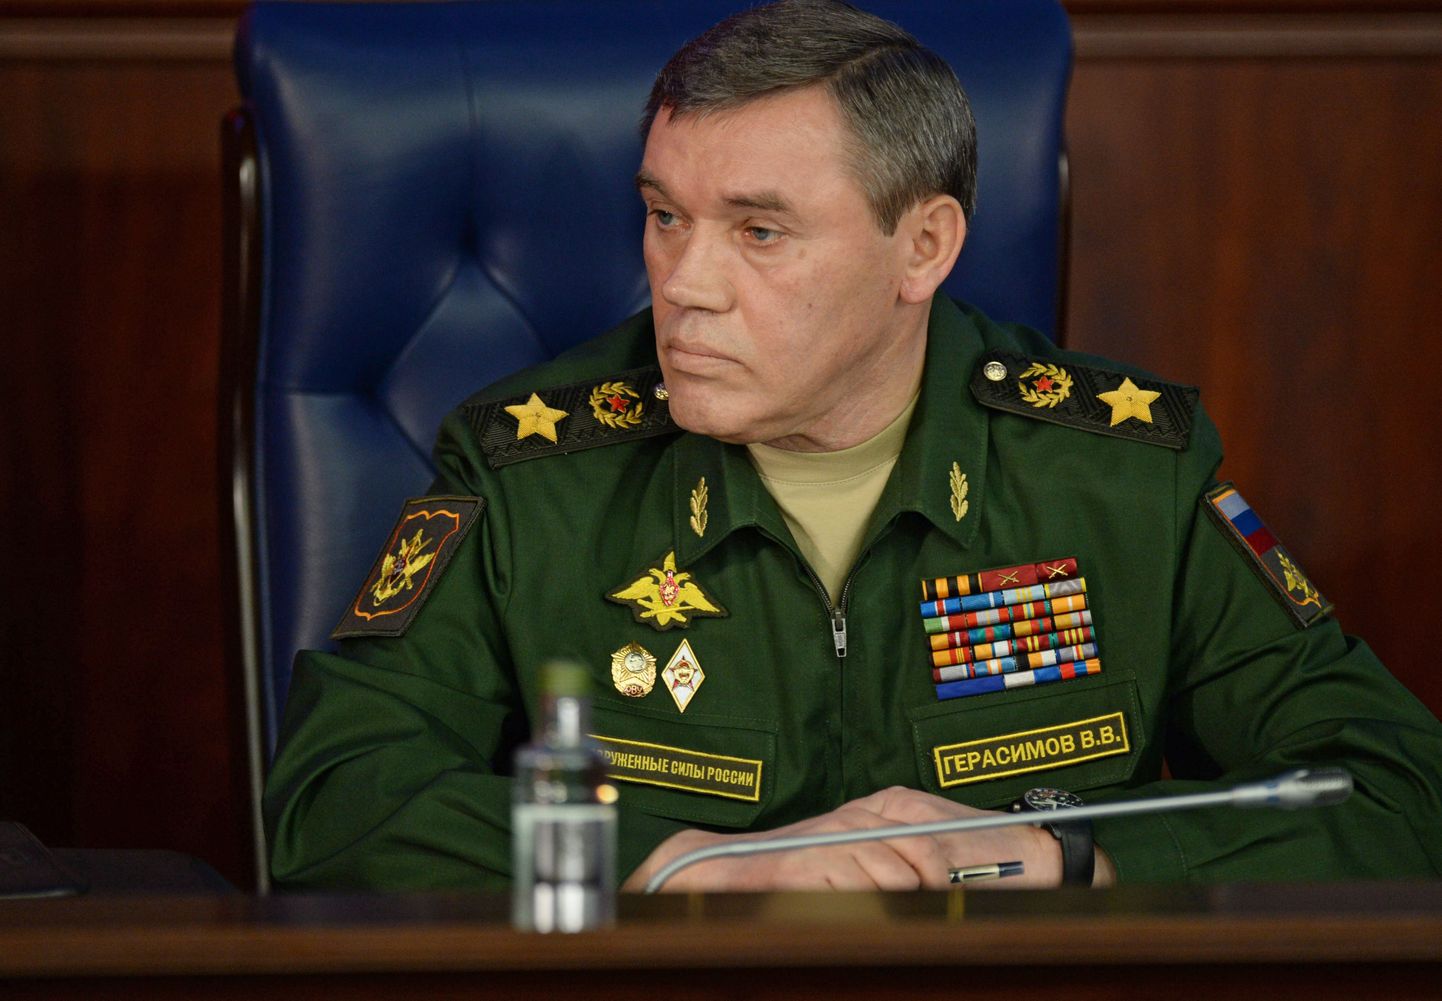 Vene kindralstaabiülem armeekindral Valeri Gerassimov